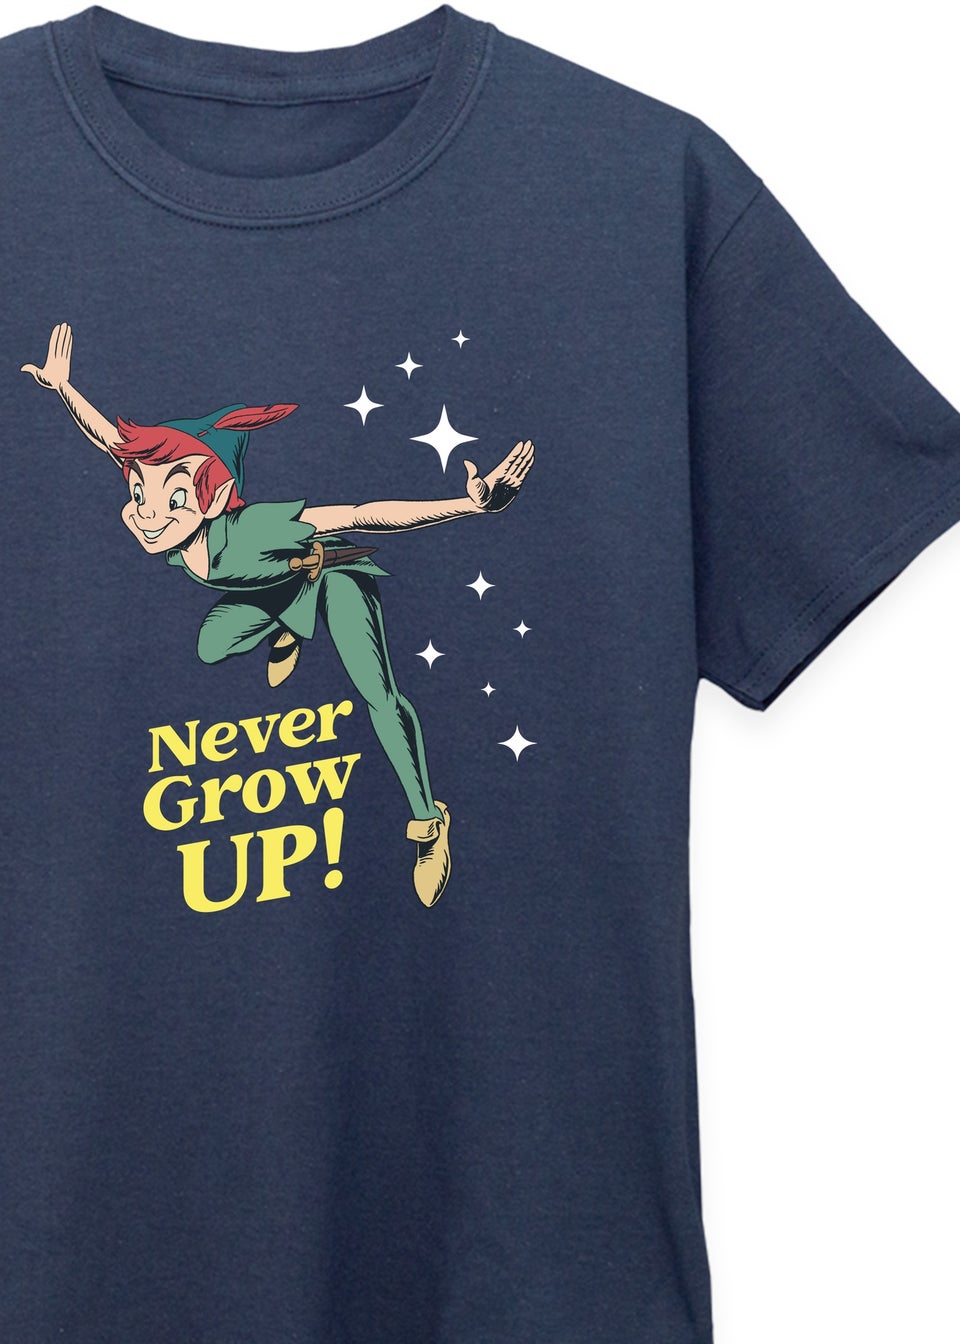 Peter Pan Kids Navy Never Grow Up Printed T-Shirt (3-13 yrs)